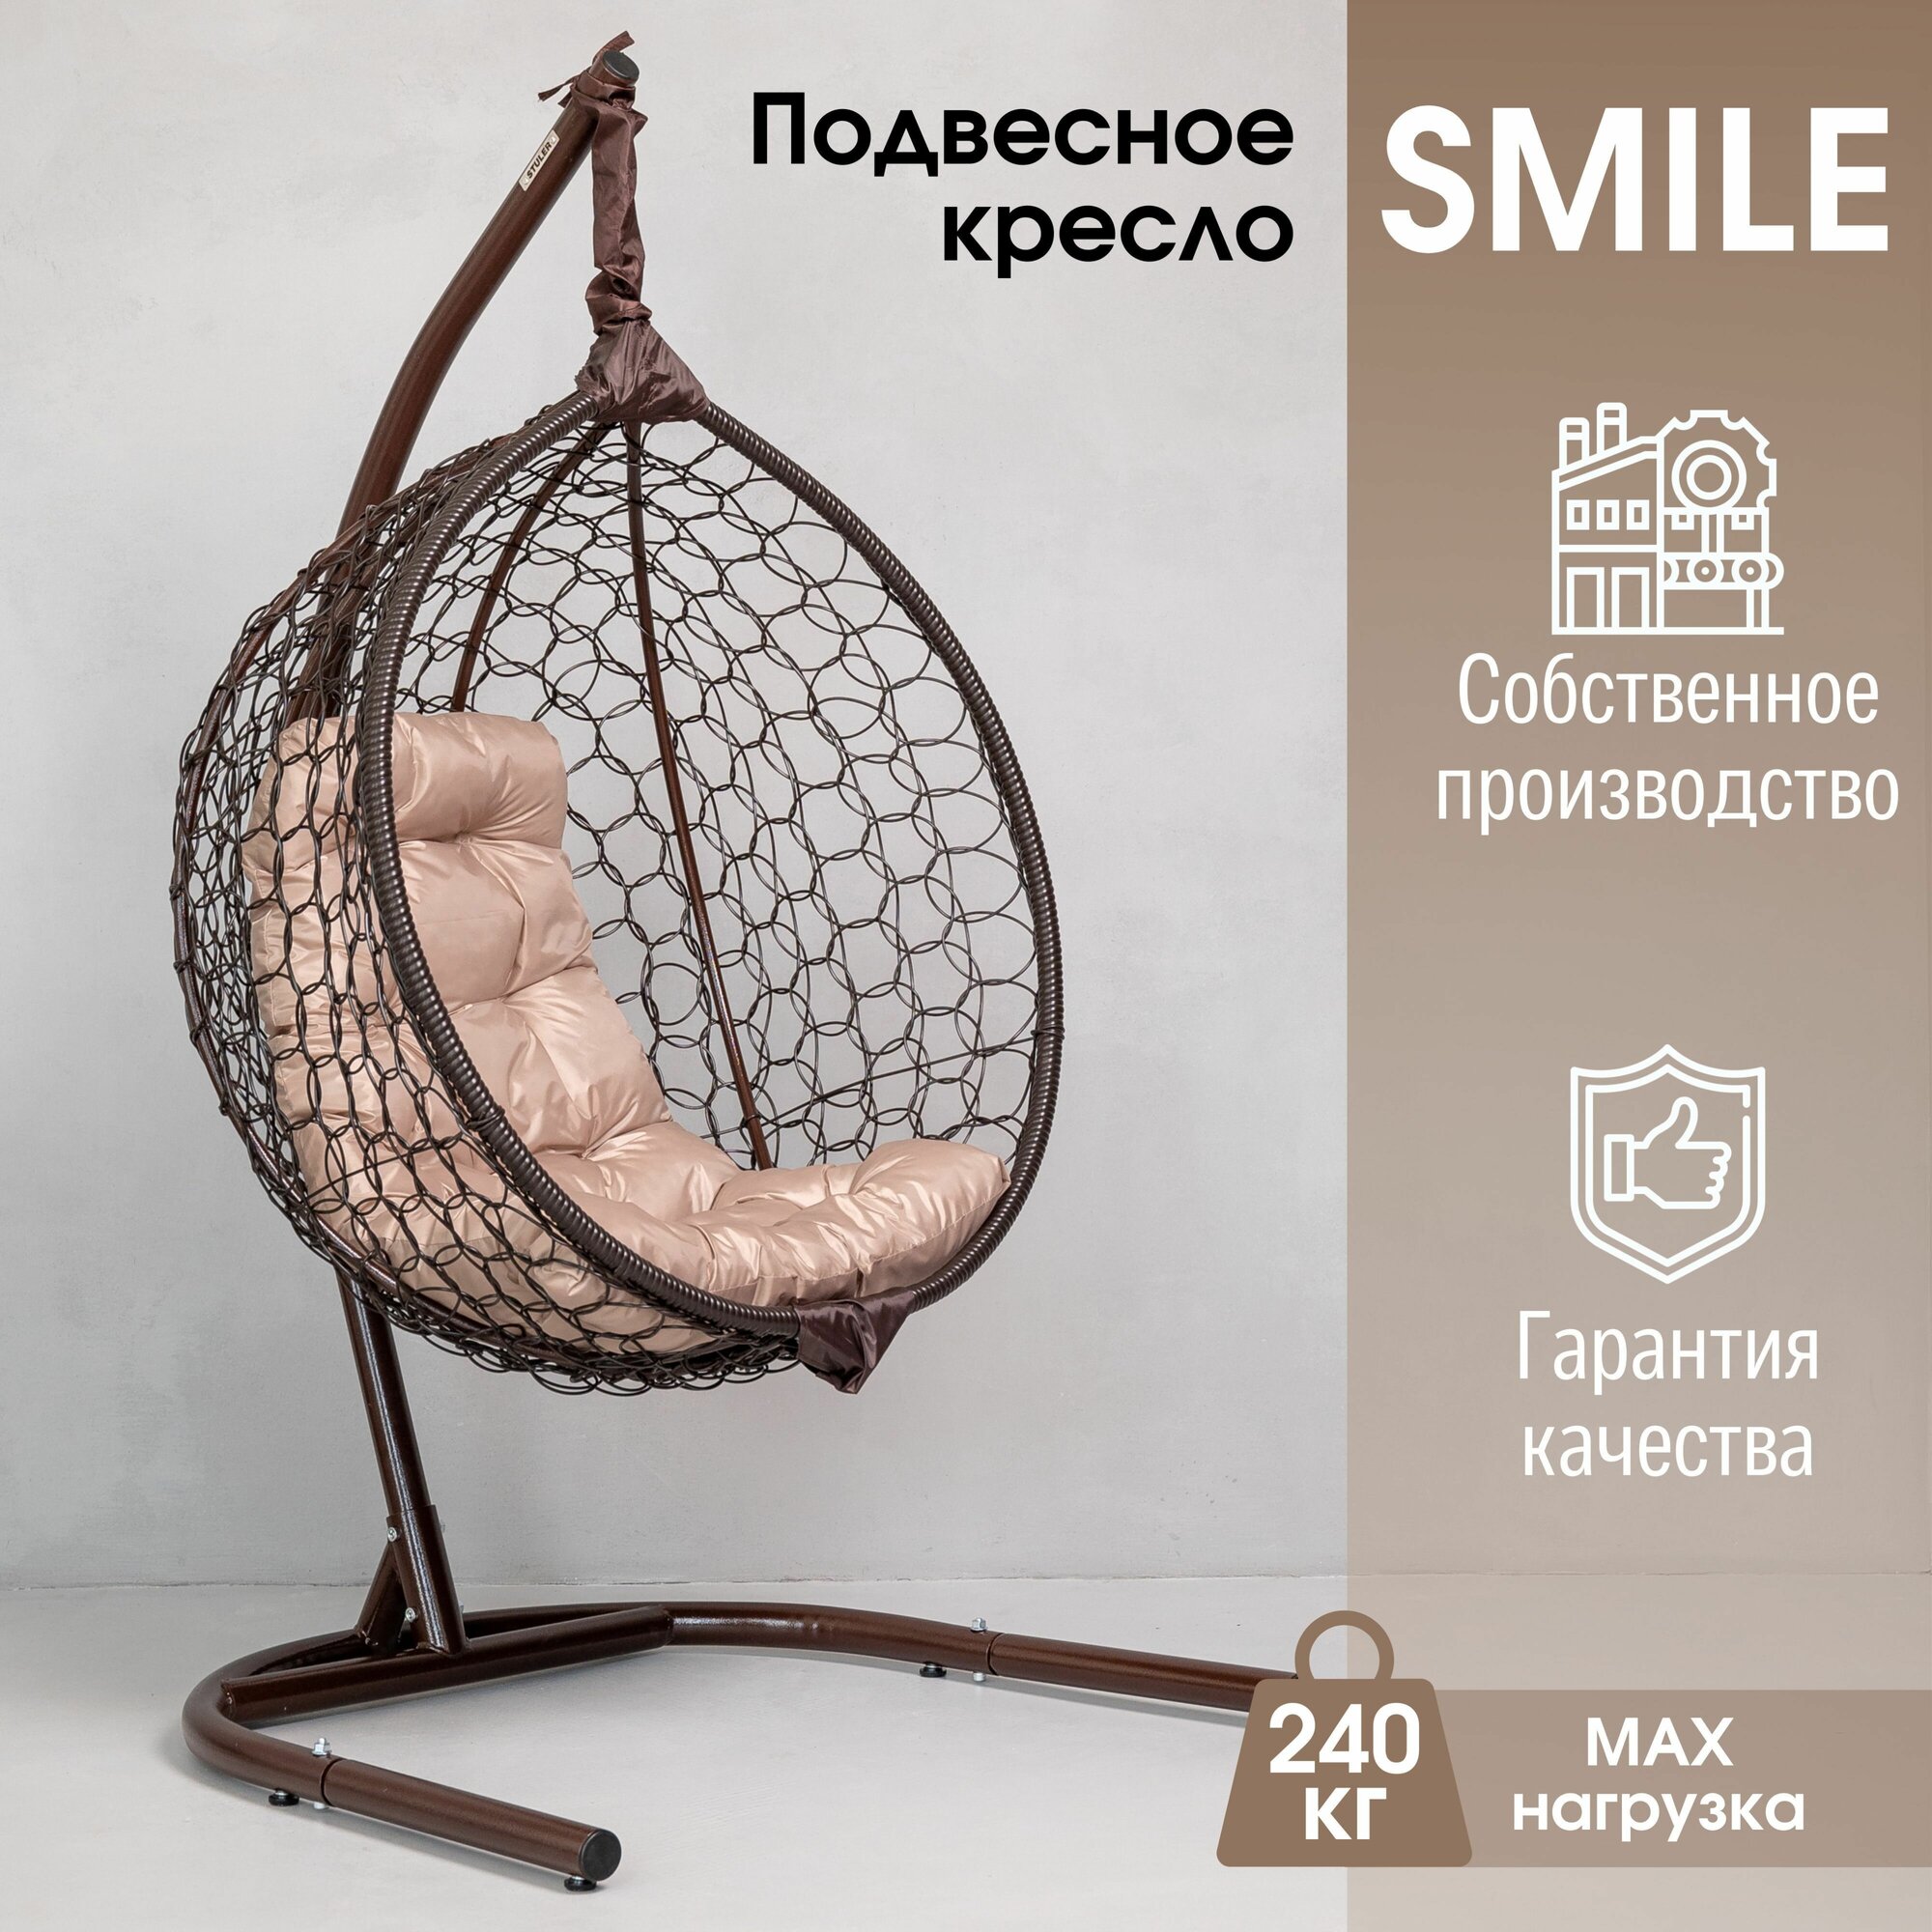 Садовое подвесное кресло Smile Ажур 240